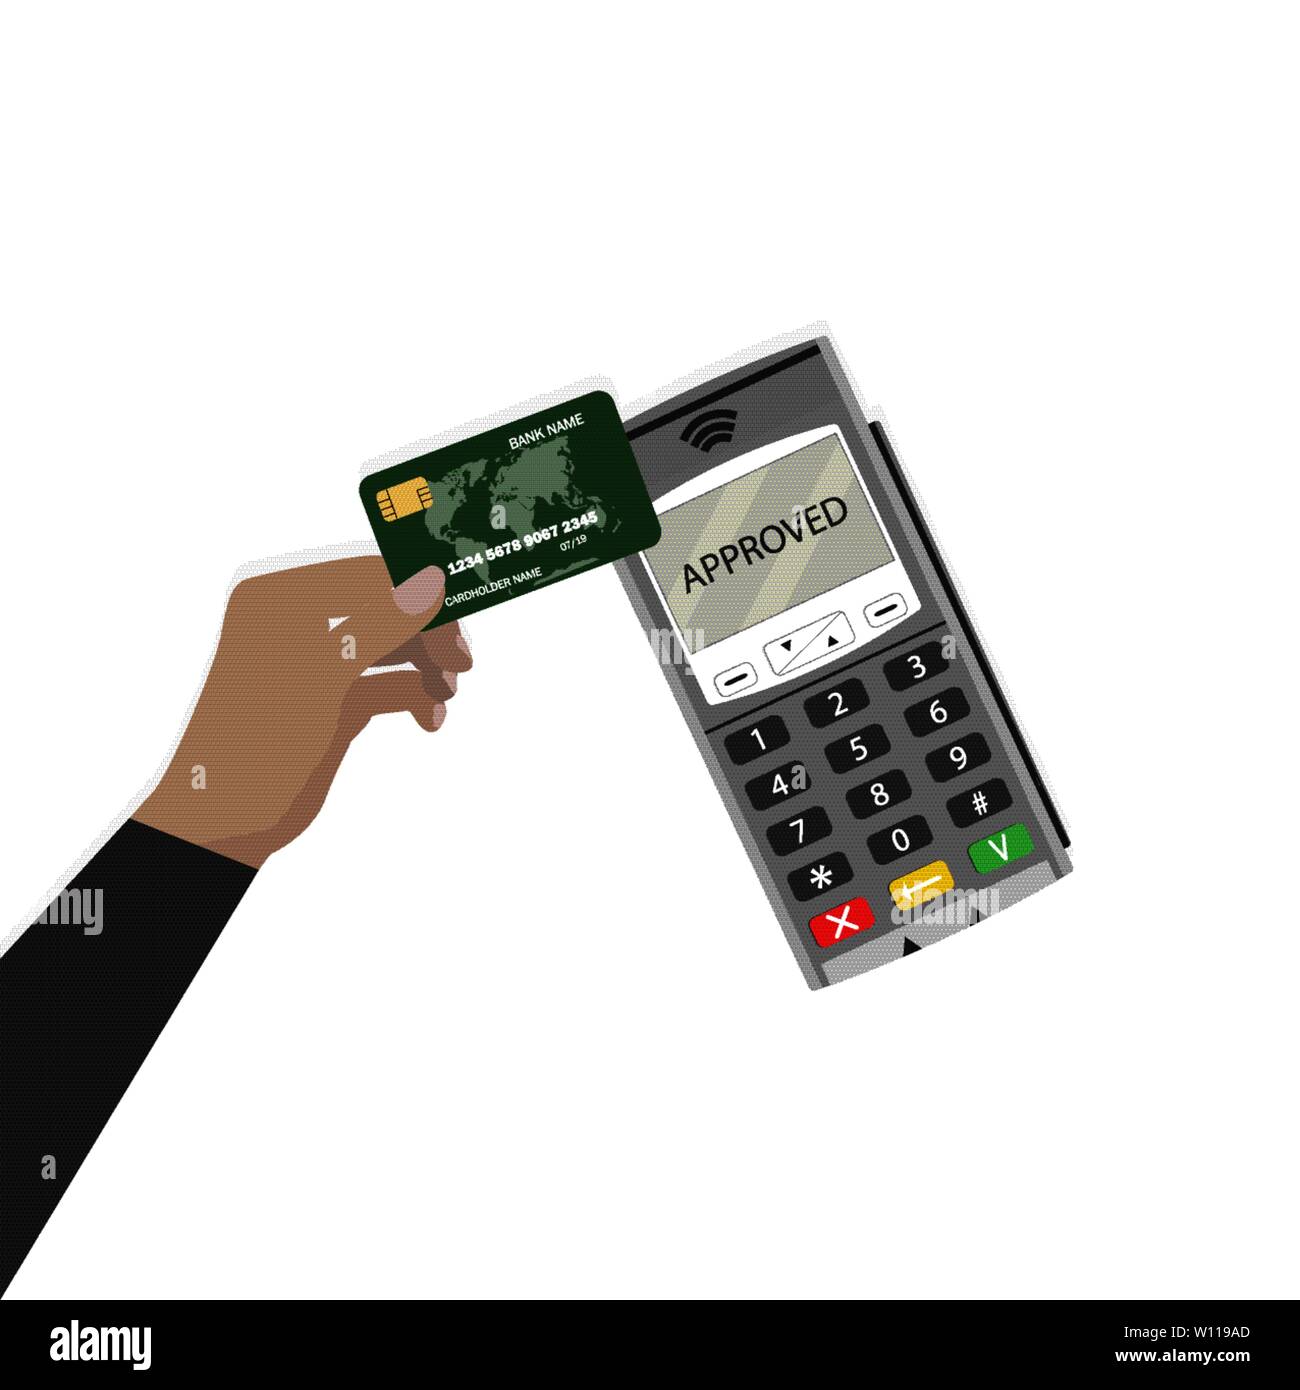 Pay pass utilizzare la scheda. Il pagamento senza contatto. Pass a pagamento Il pagamento, nfc banking, transazione senza contanti, illustrazione vettoriale Illustrazione Vettoriale